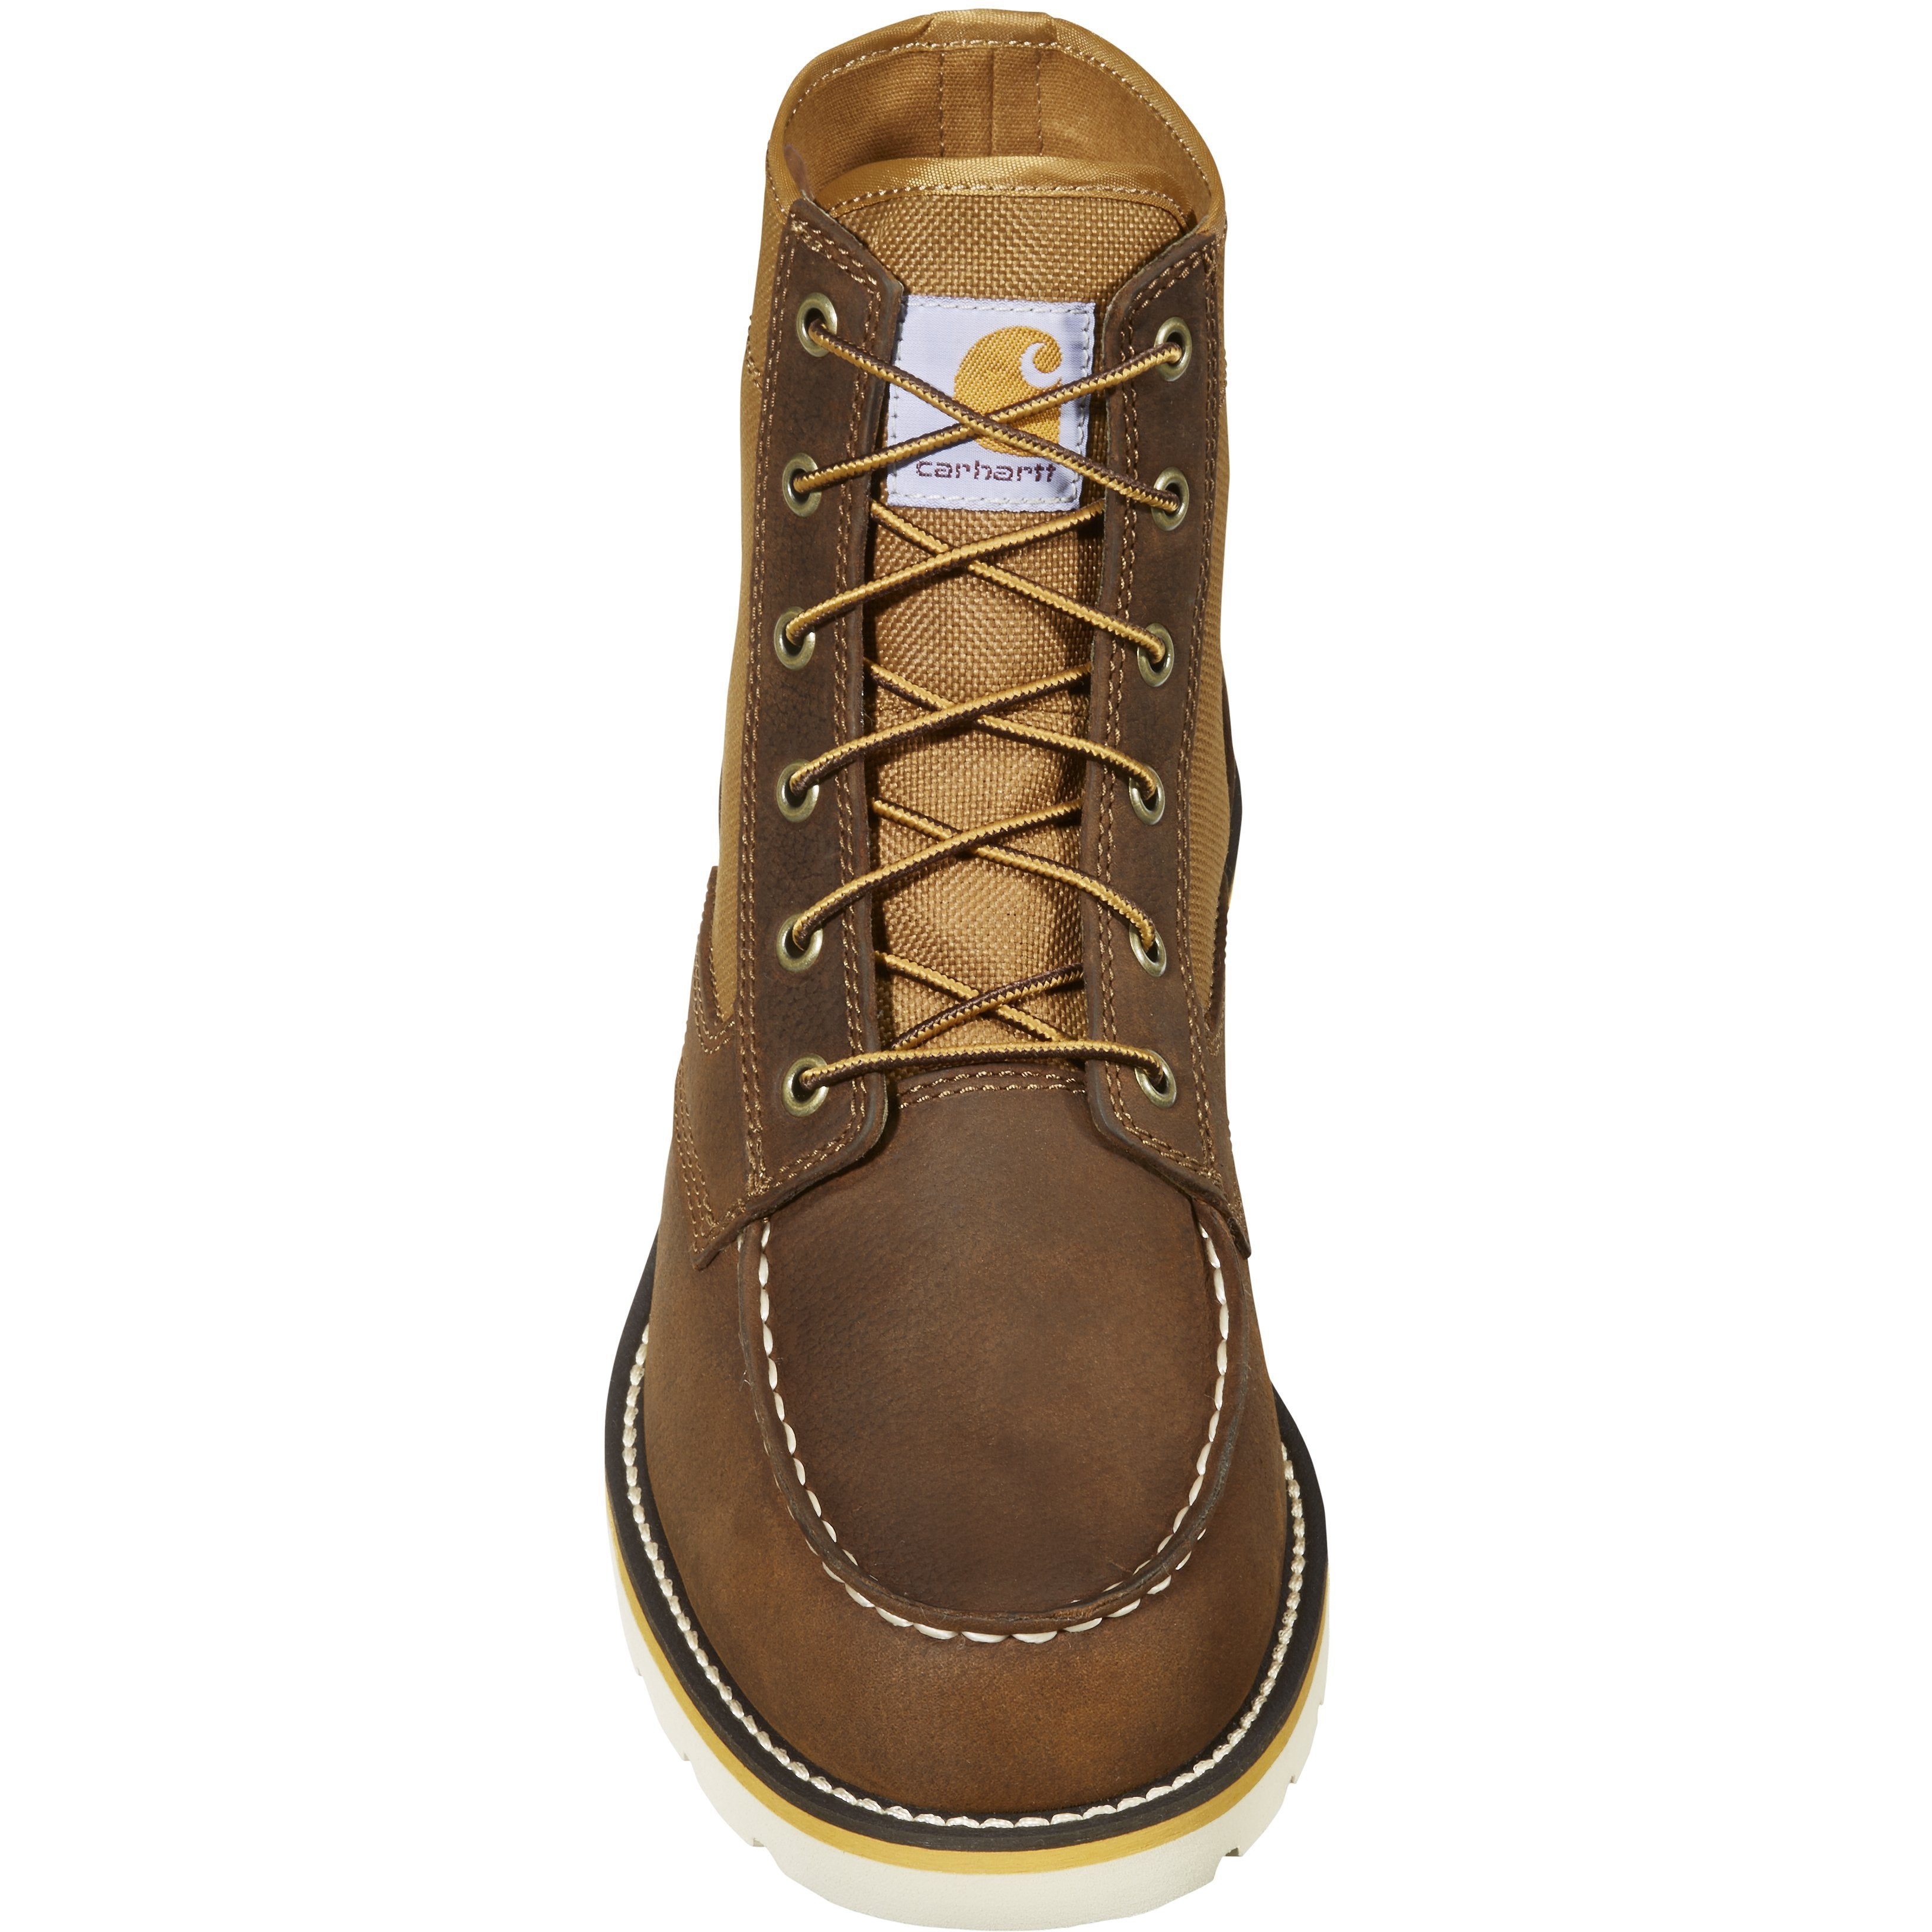 Carhartt Men's 6" Soft Toe Wedge Work Boot - Brown - FW6035-M  - Overlook Boots